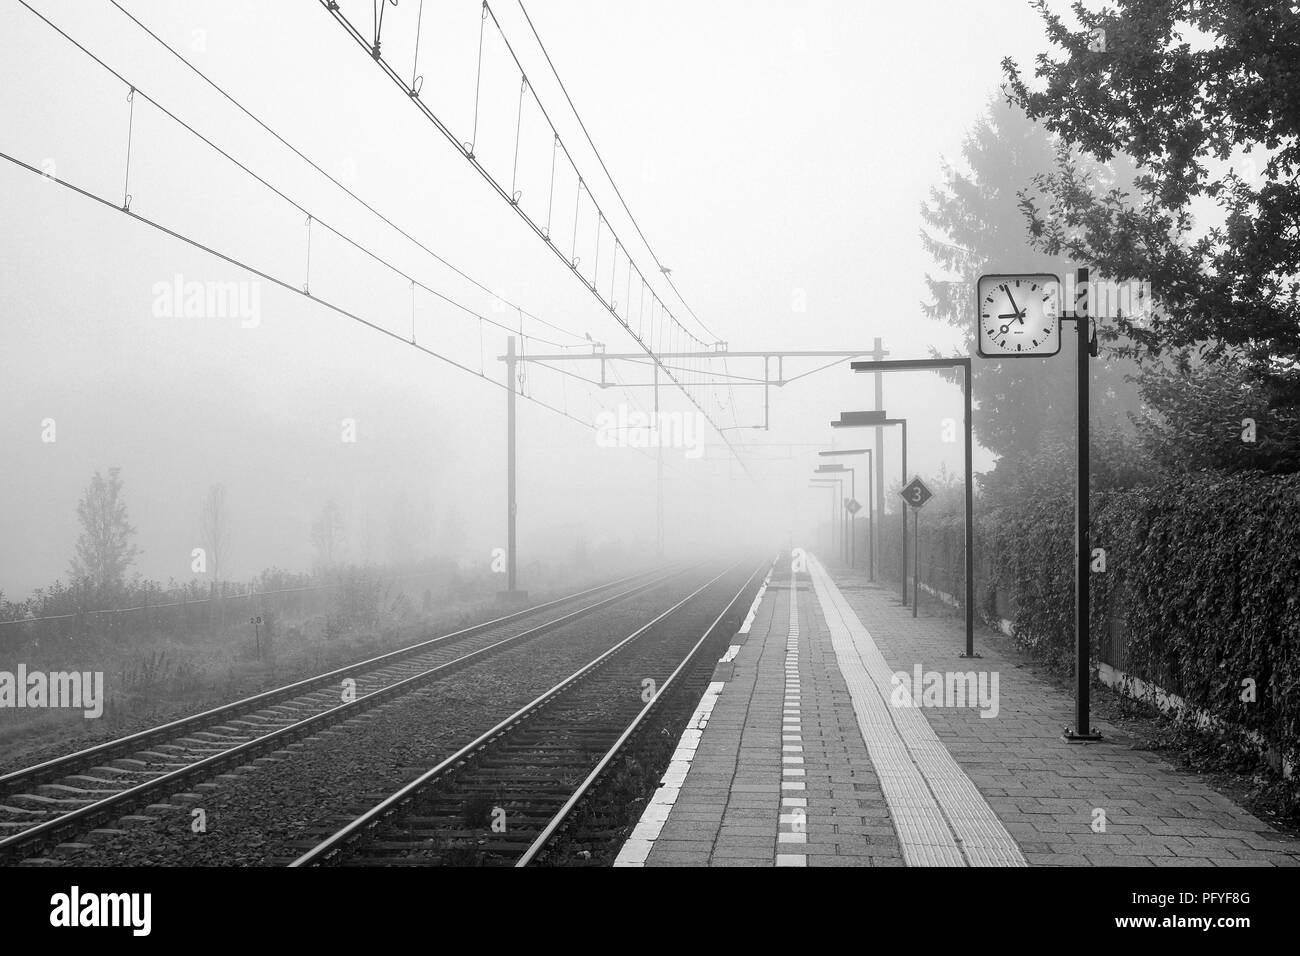 Si tratta di un nebbioso ottobre mattina presso la piccola stazione ferroviaria olandese di Almelo de Riet. È situato vicino a Almelo nella parte orientale dei Paesi Bassi. Foto Stock